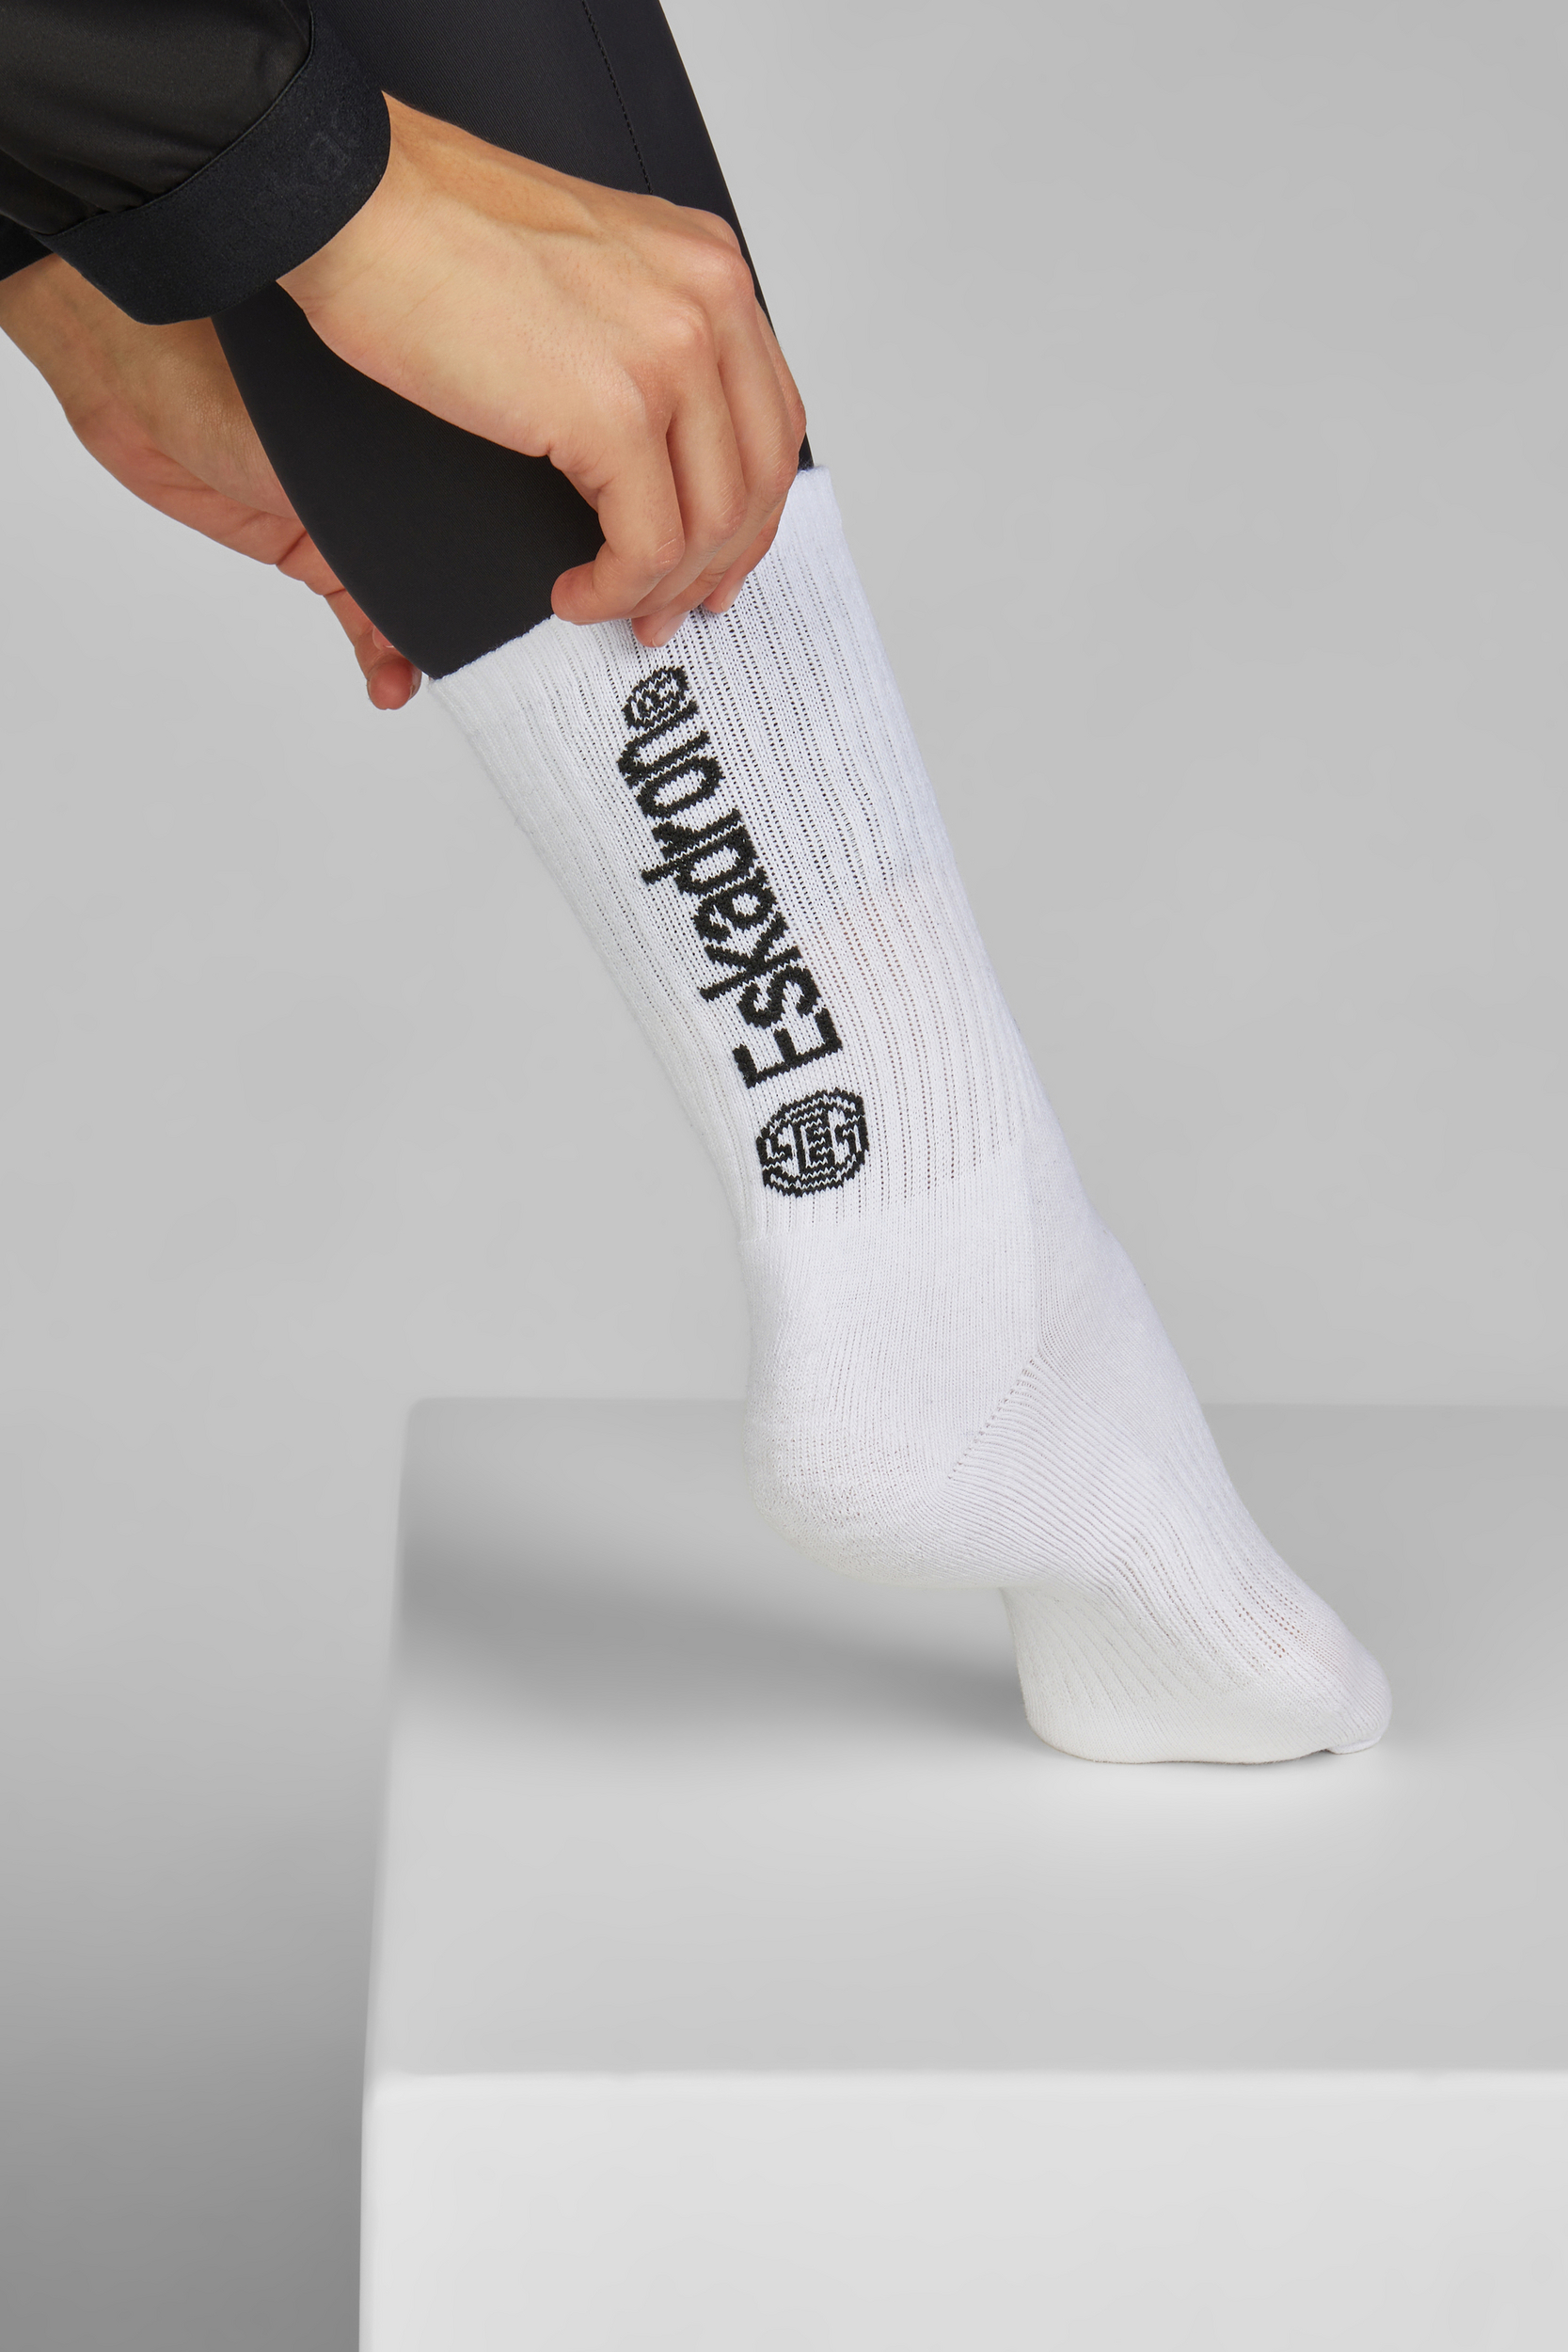 ESKADRON Socken Damen sportlich & stylisch Dynamic 24 - white - 41-43 - 1